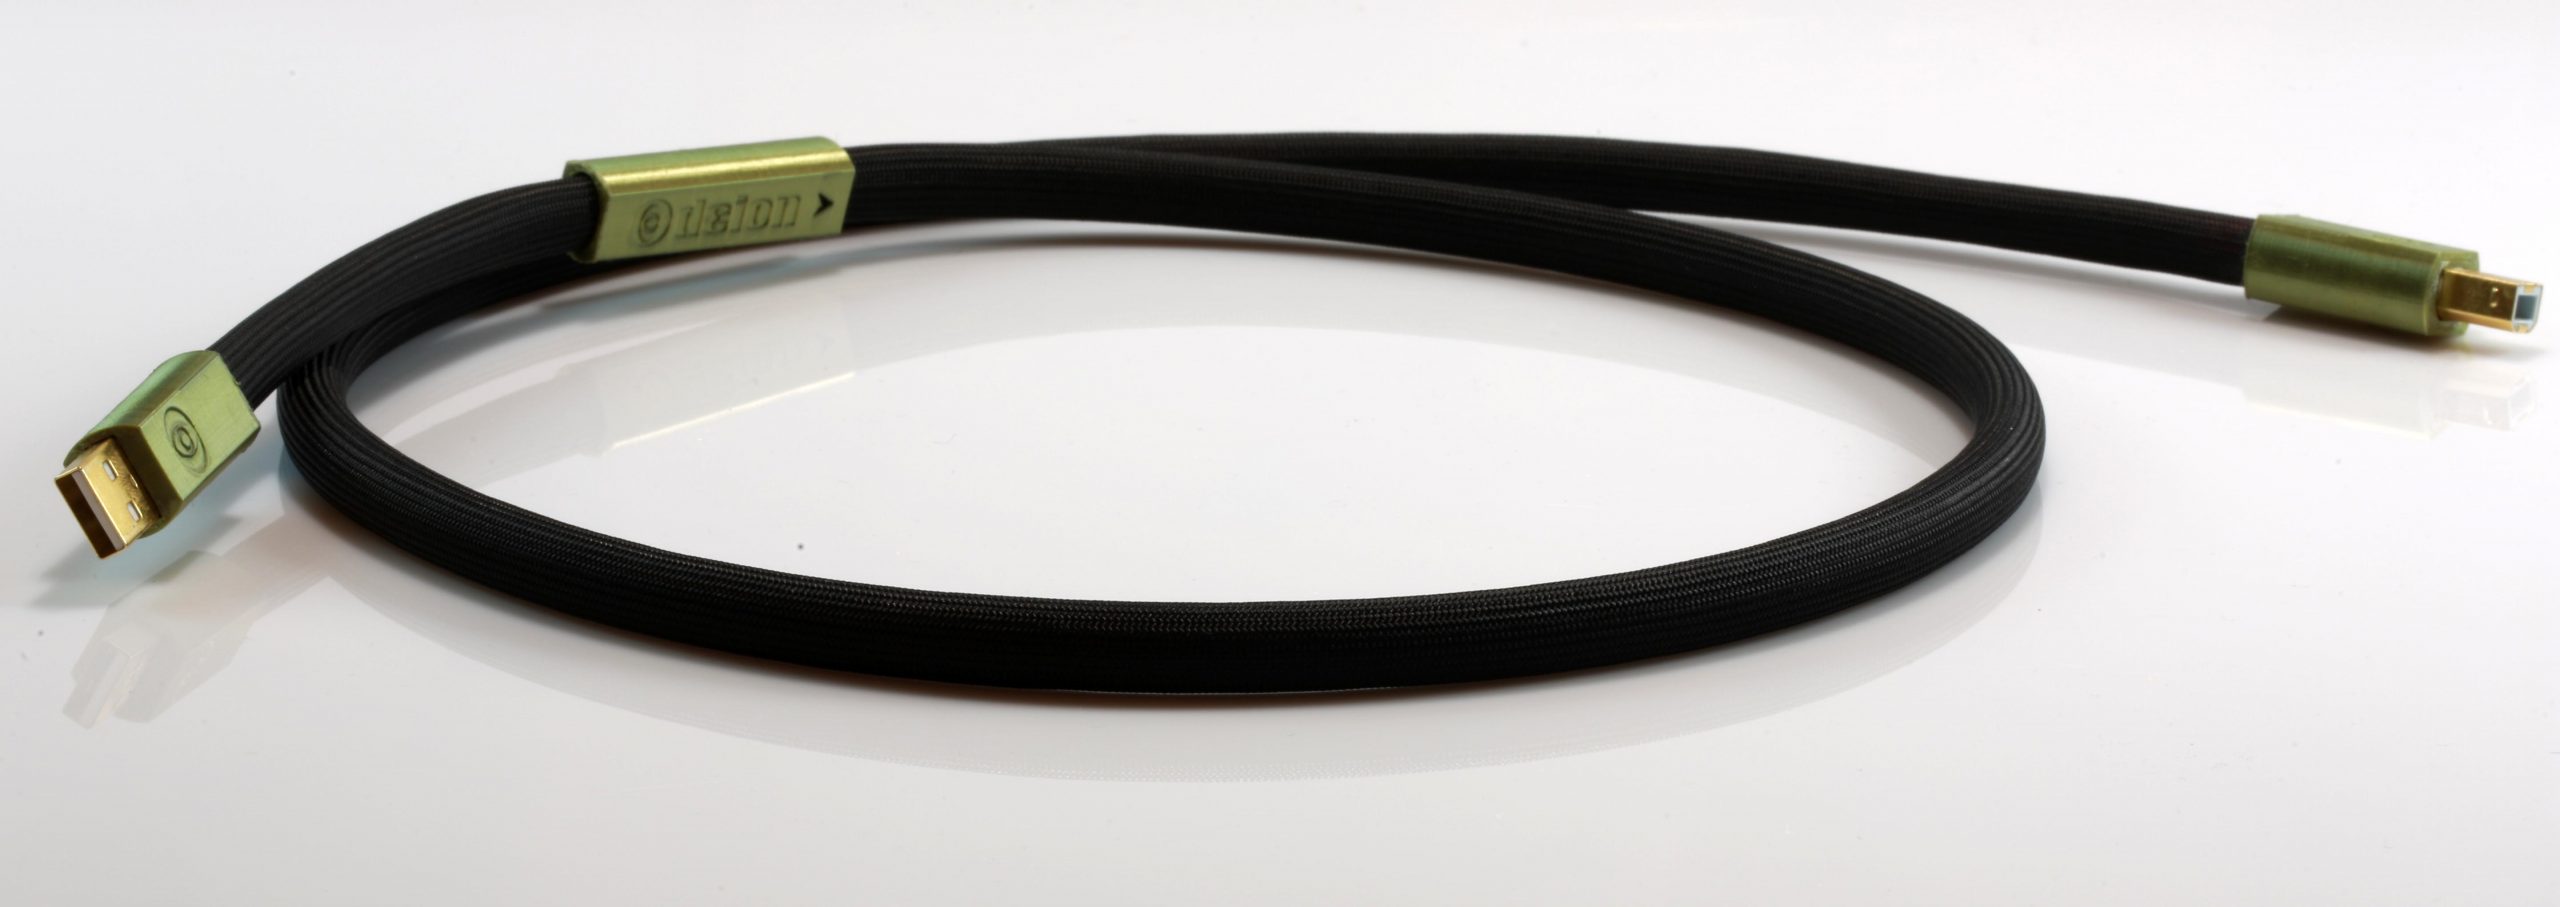 Delta Numérique USB Digital Odeion Cables